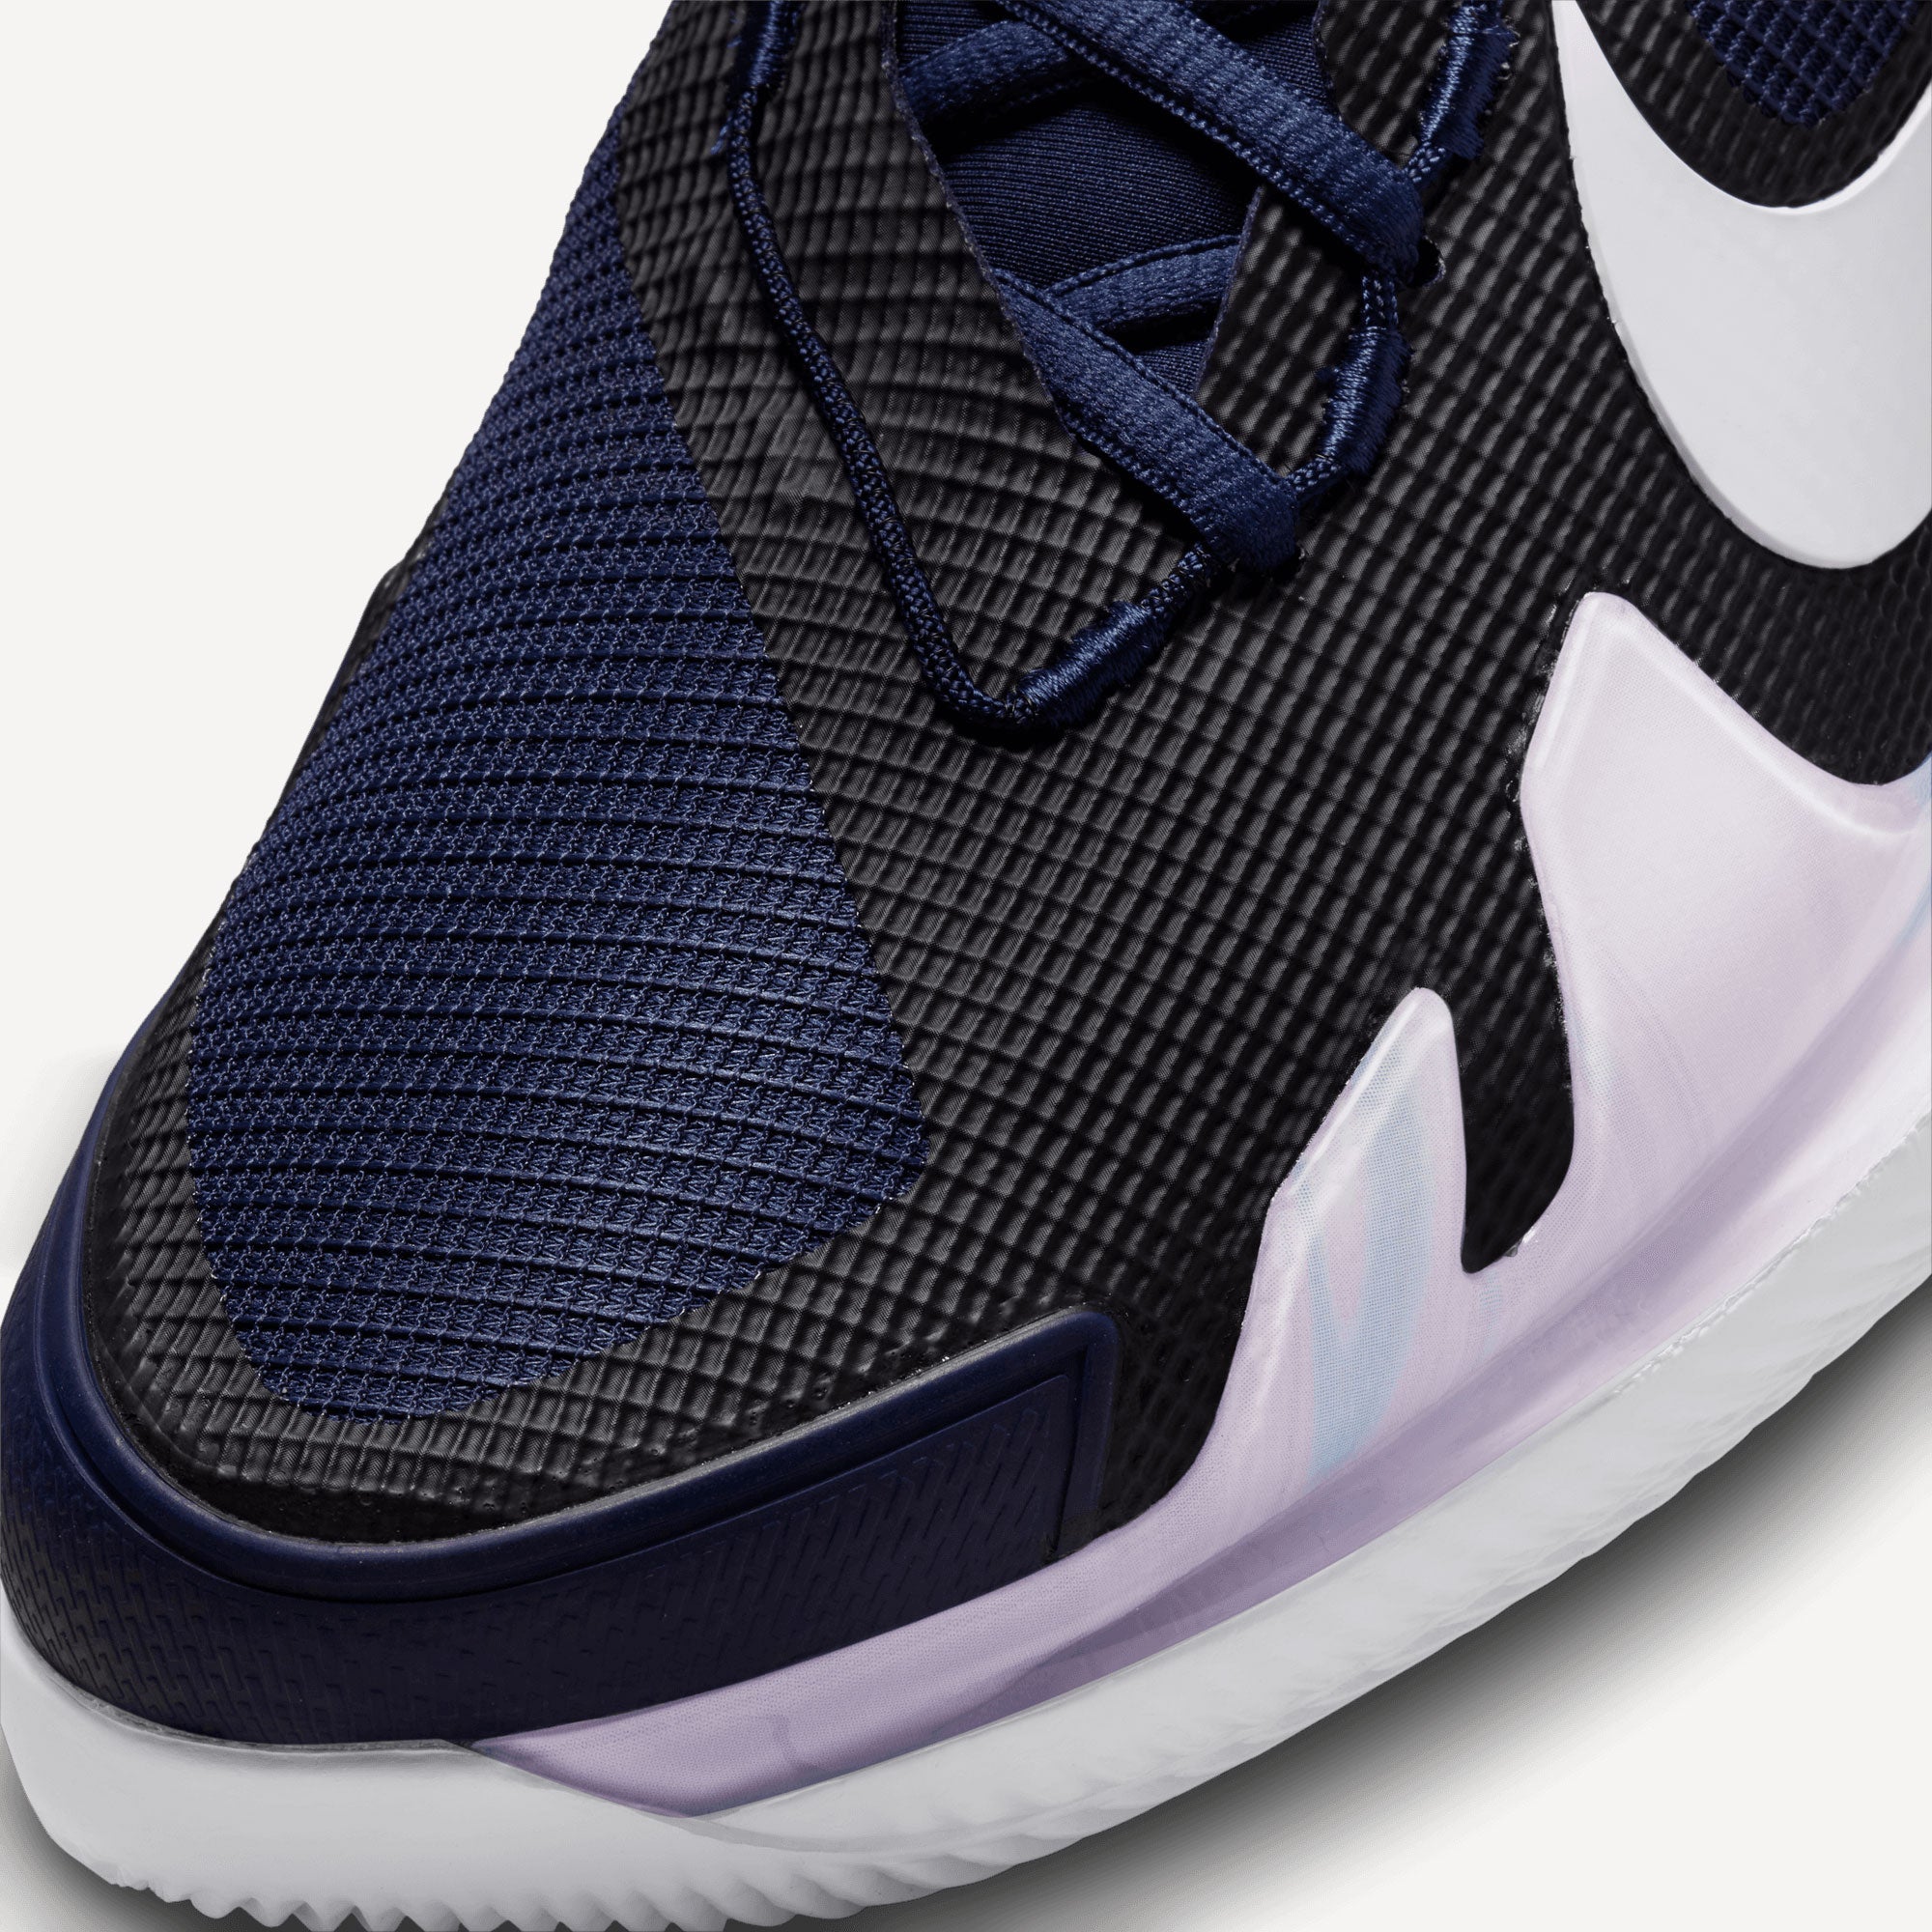 NikeCourt Air Zoom Vapor Pro Men's Hard Court Tennis Shoes Blue (7)